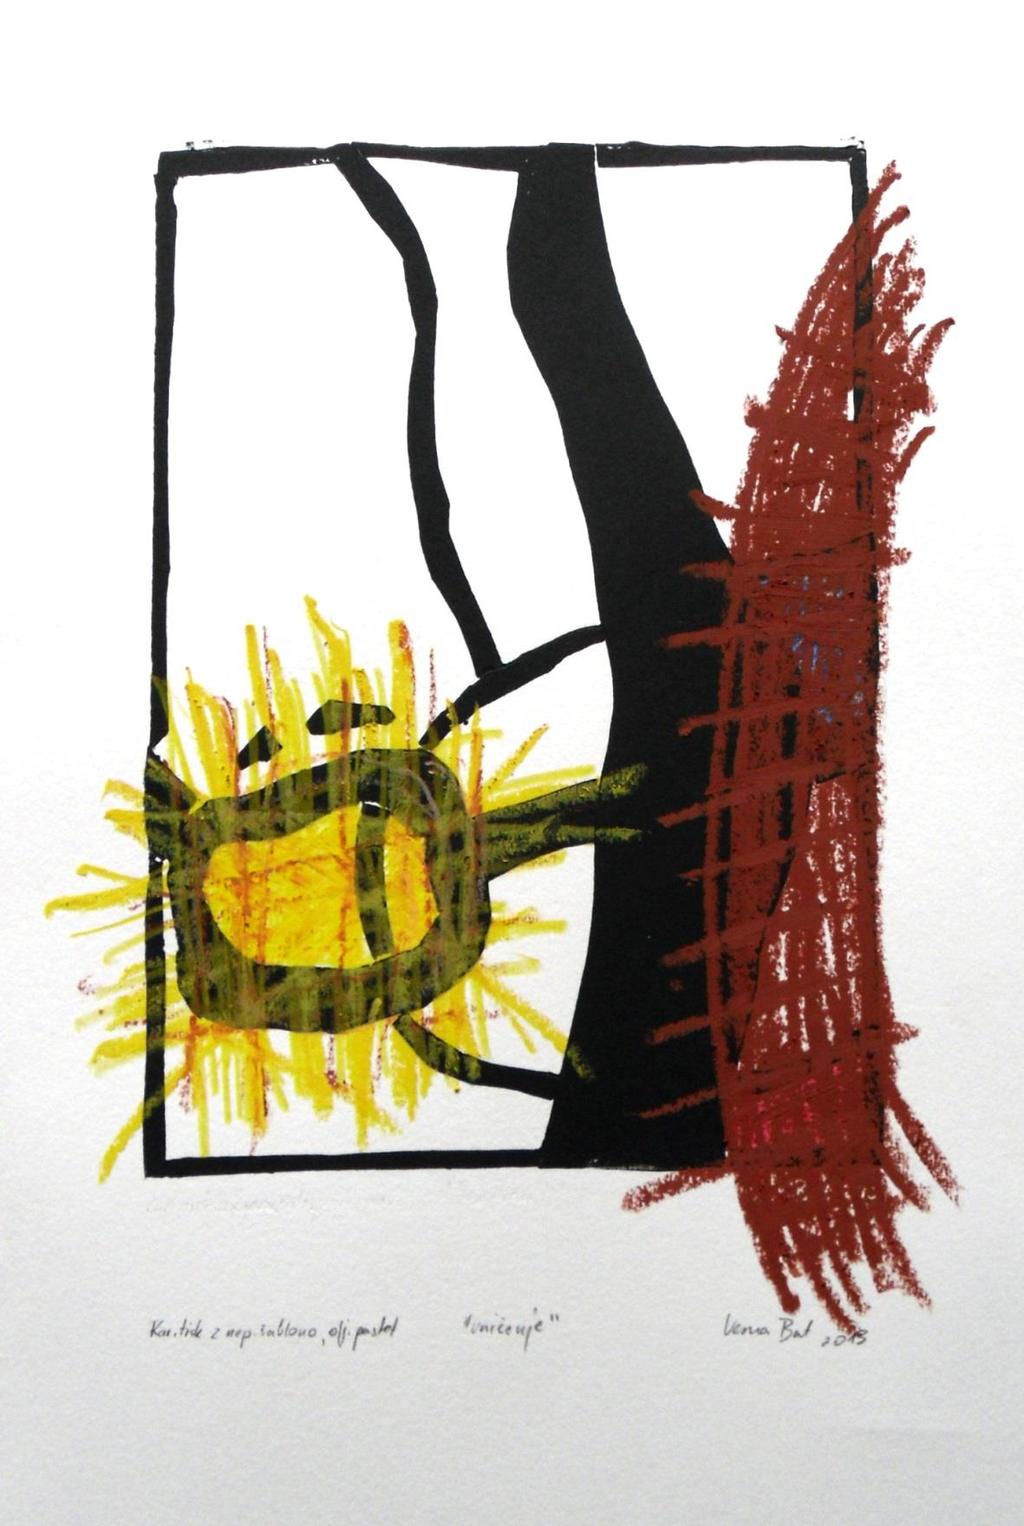 Slika 37: Vesna Bat, Uničenje, 2013, kartonski tisk z nepremično šablono, oljni pastel, 35 x 50 cm Dodana je risba v